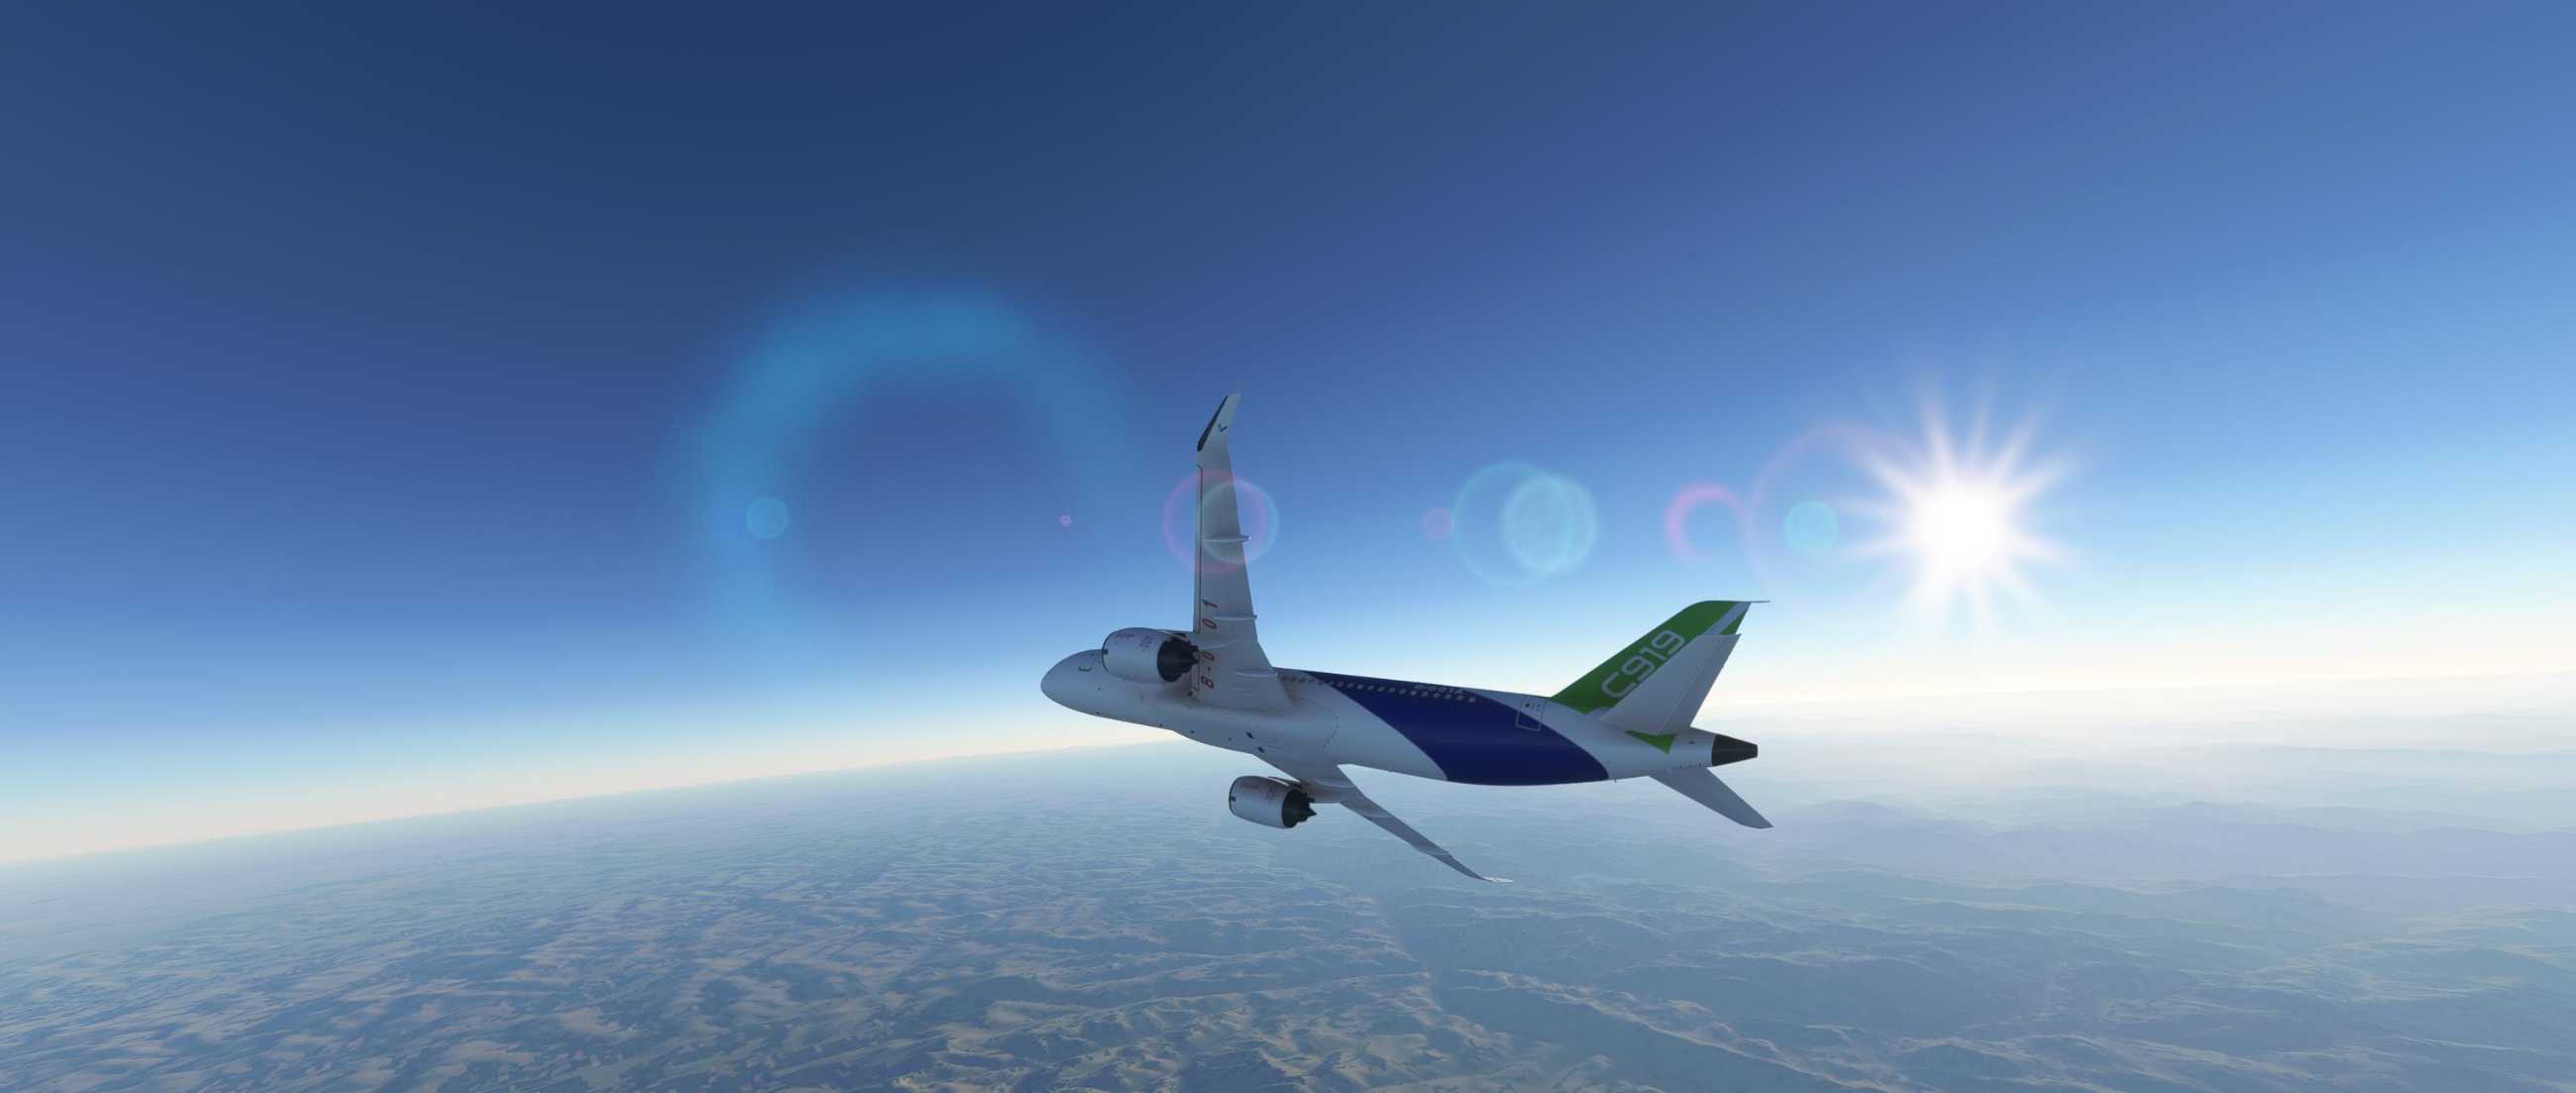 FYCYC-C919 国产大飞机机模 微软模拟飞行演示-177 